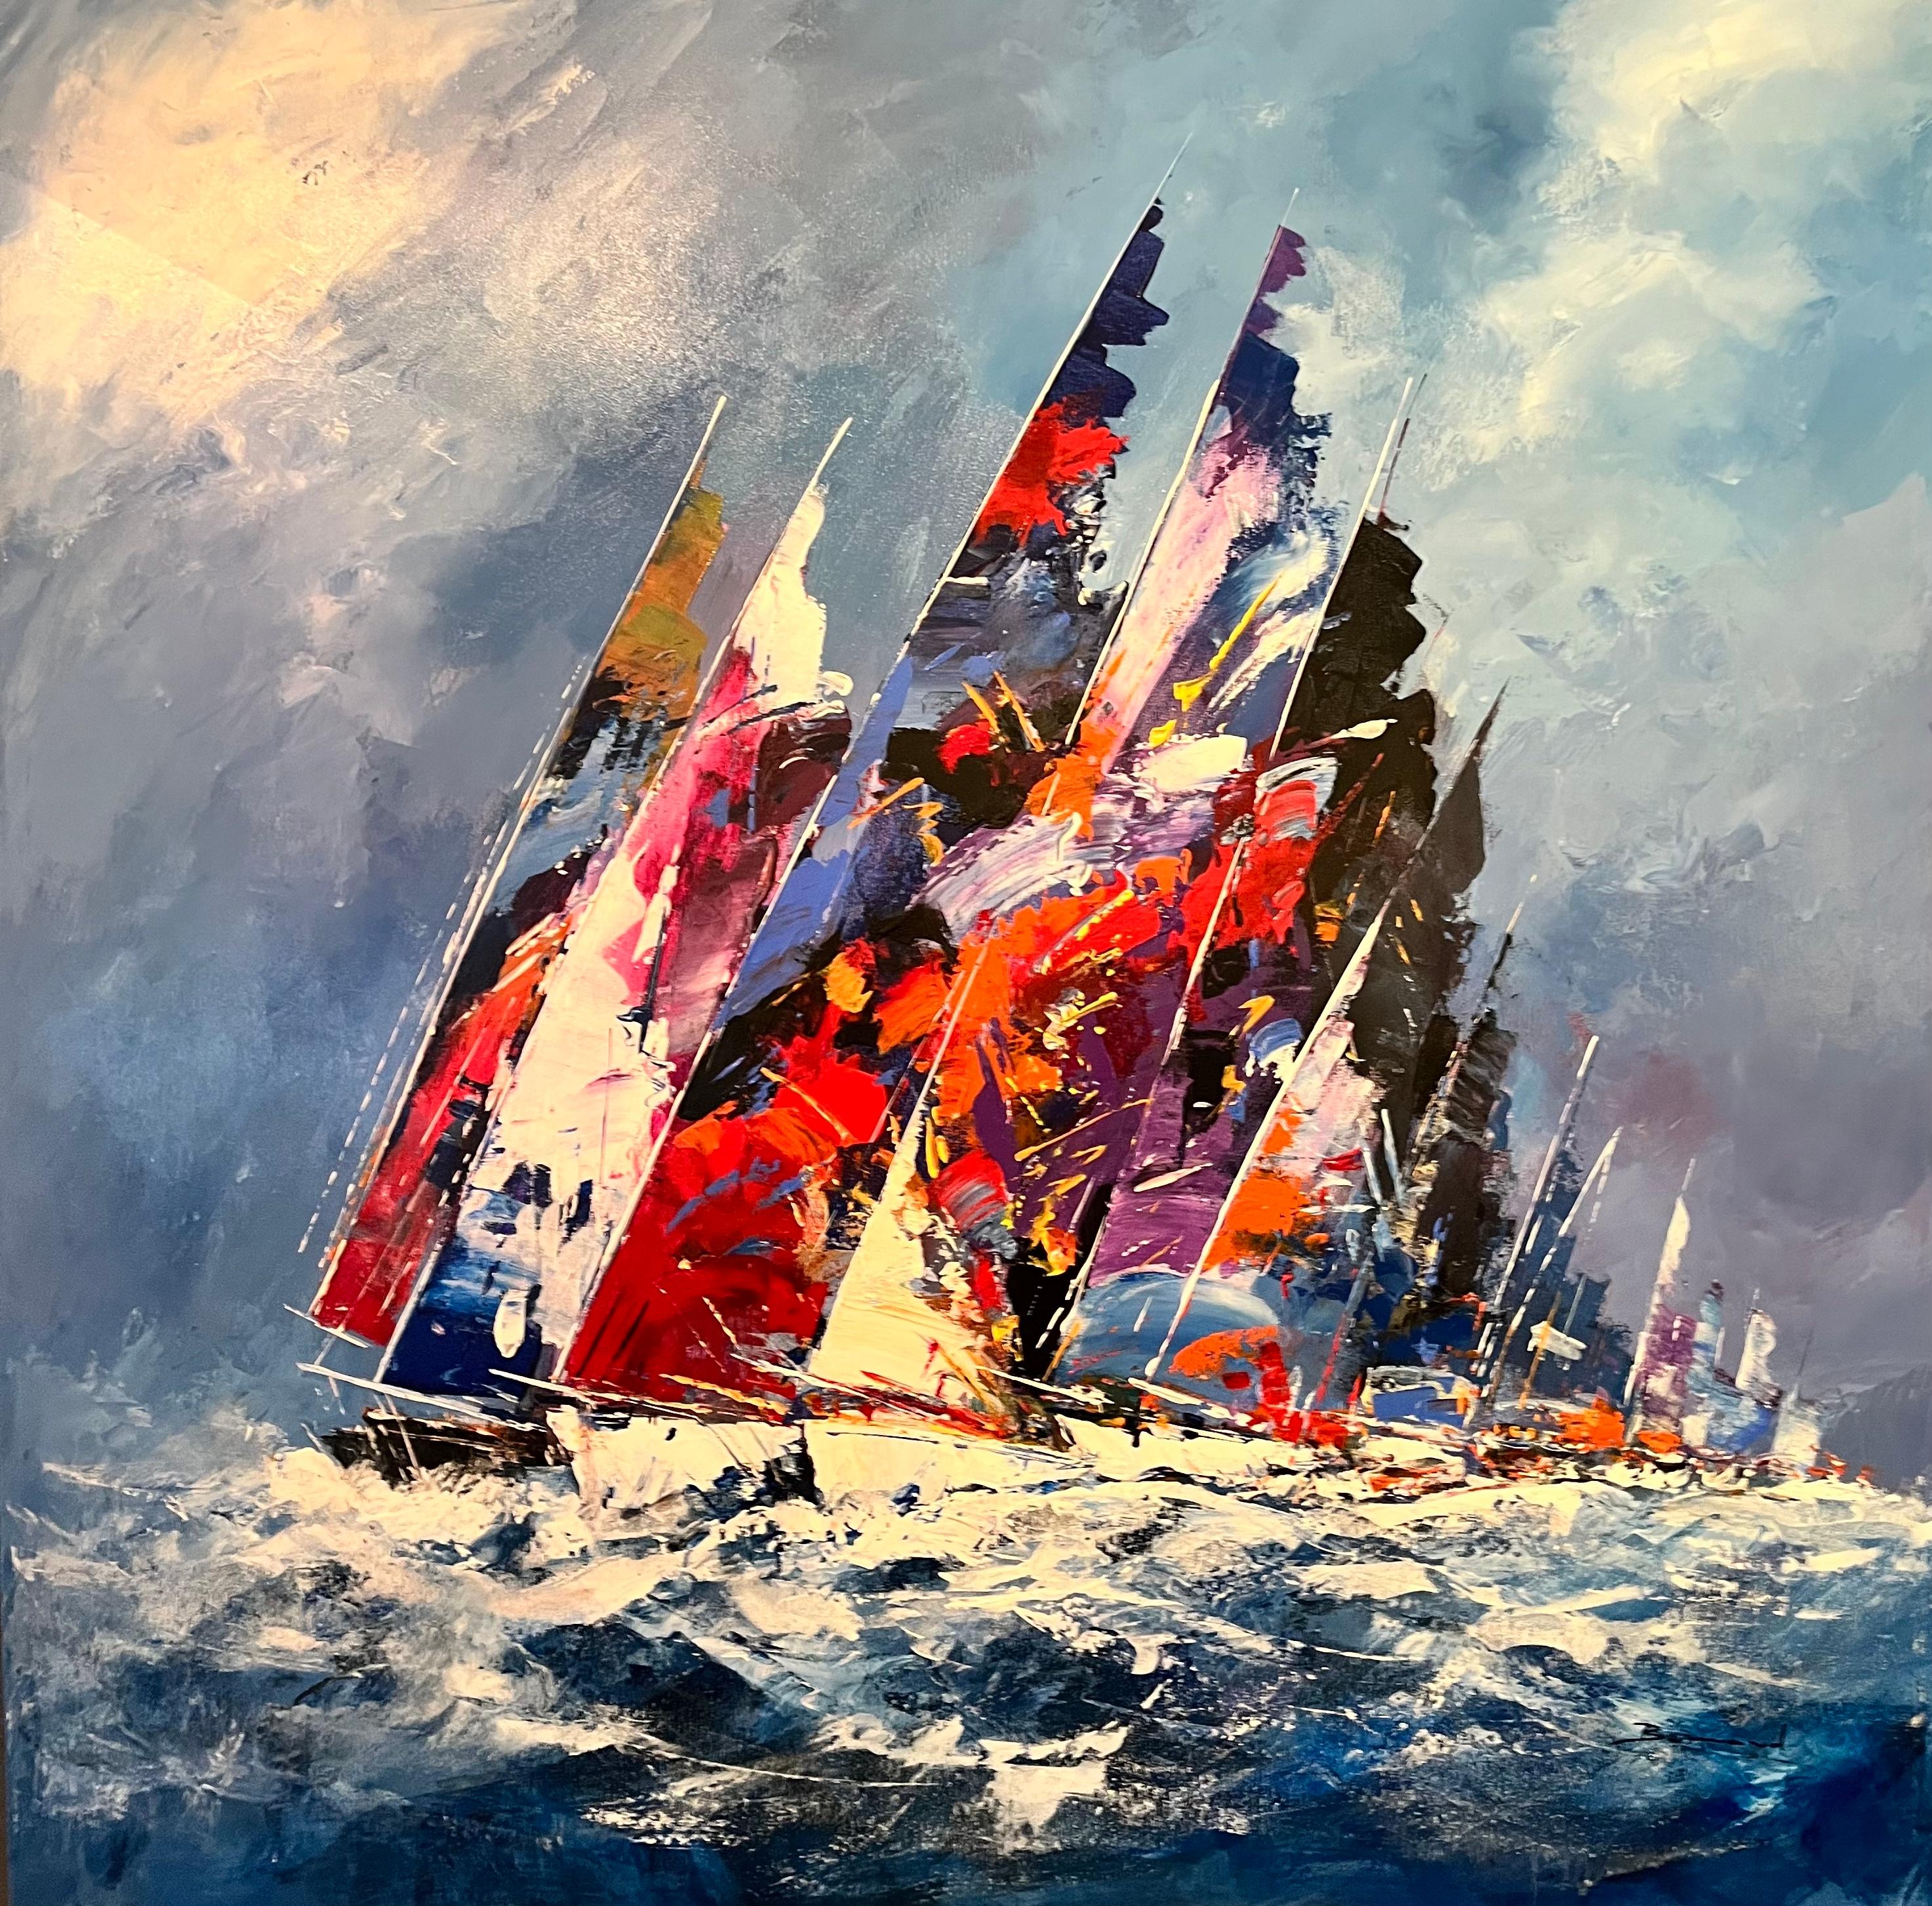 Abstract Painting Bernard - «ody Seas » - Peinture contemporaine de bateaux à voile colorés sur eau, bleu, rouge